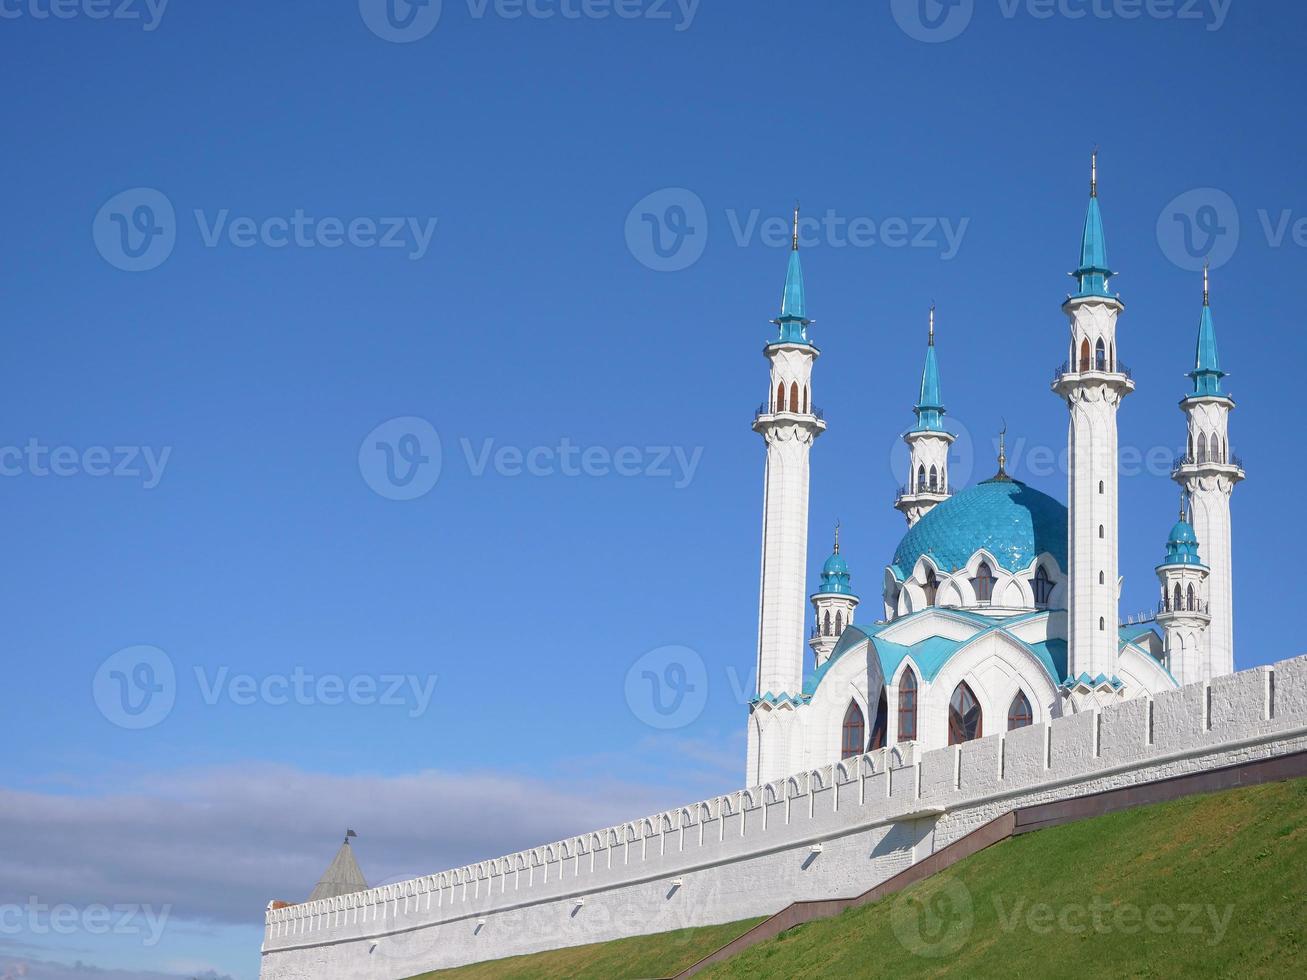 historischer und architektonischer komplex des kasanischen kremls kasan russland foto